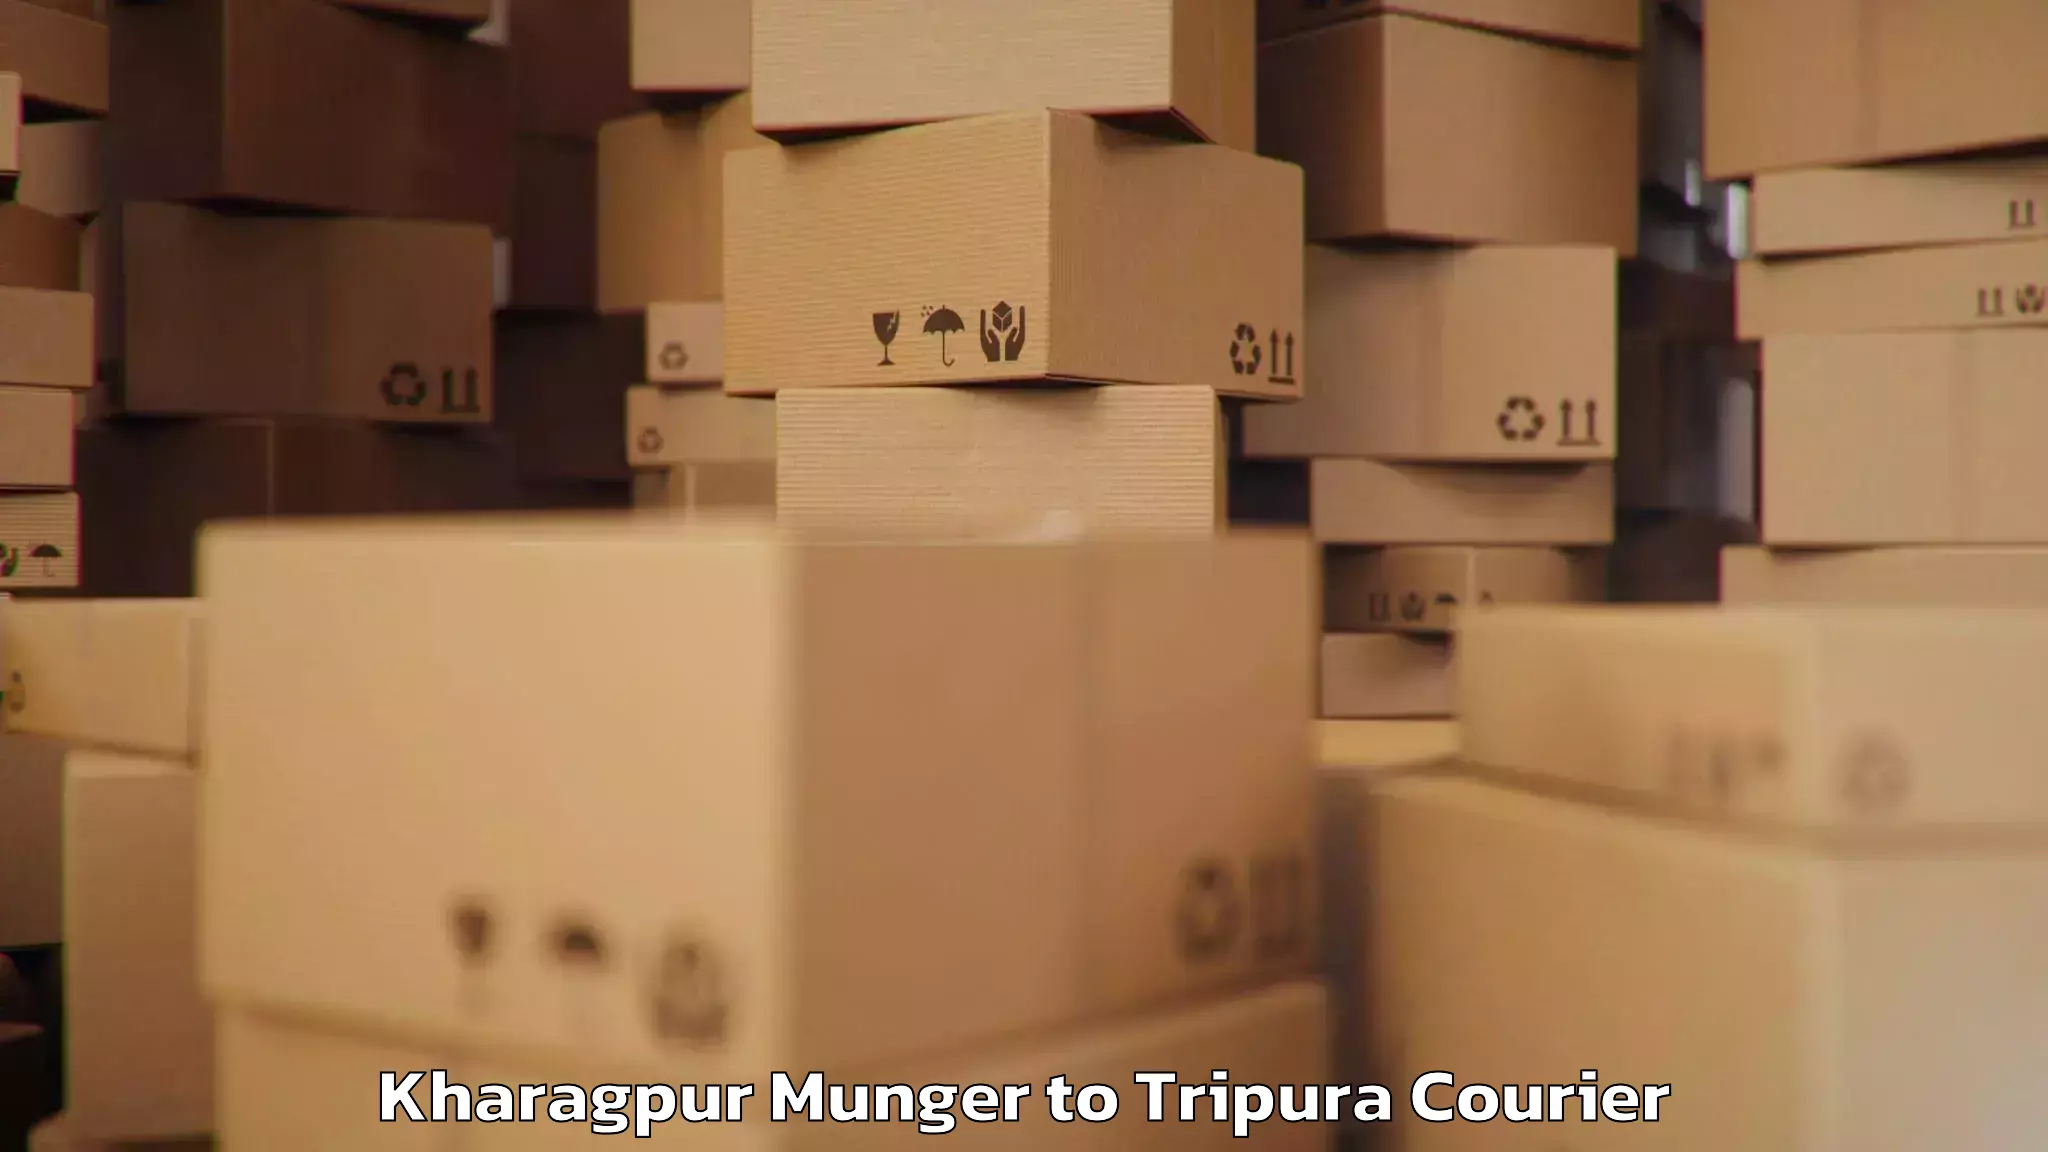 Baggage transport technology Kharagpur Munger to Ambassa